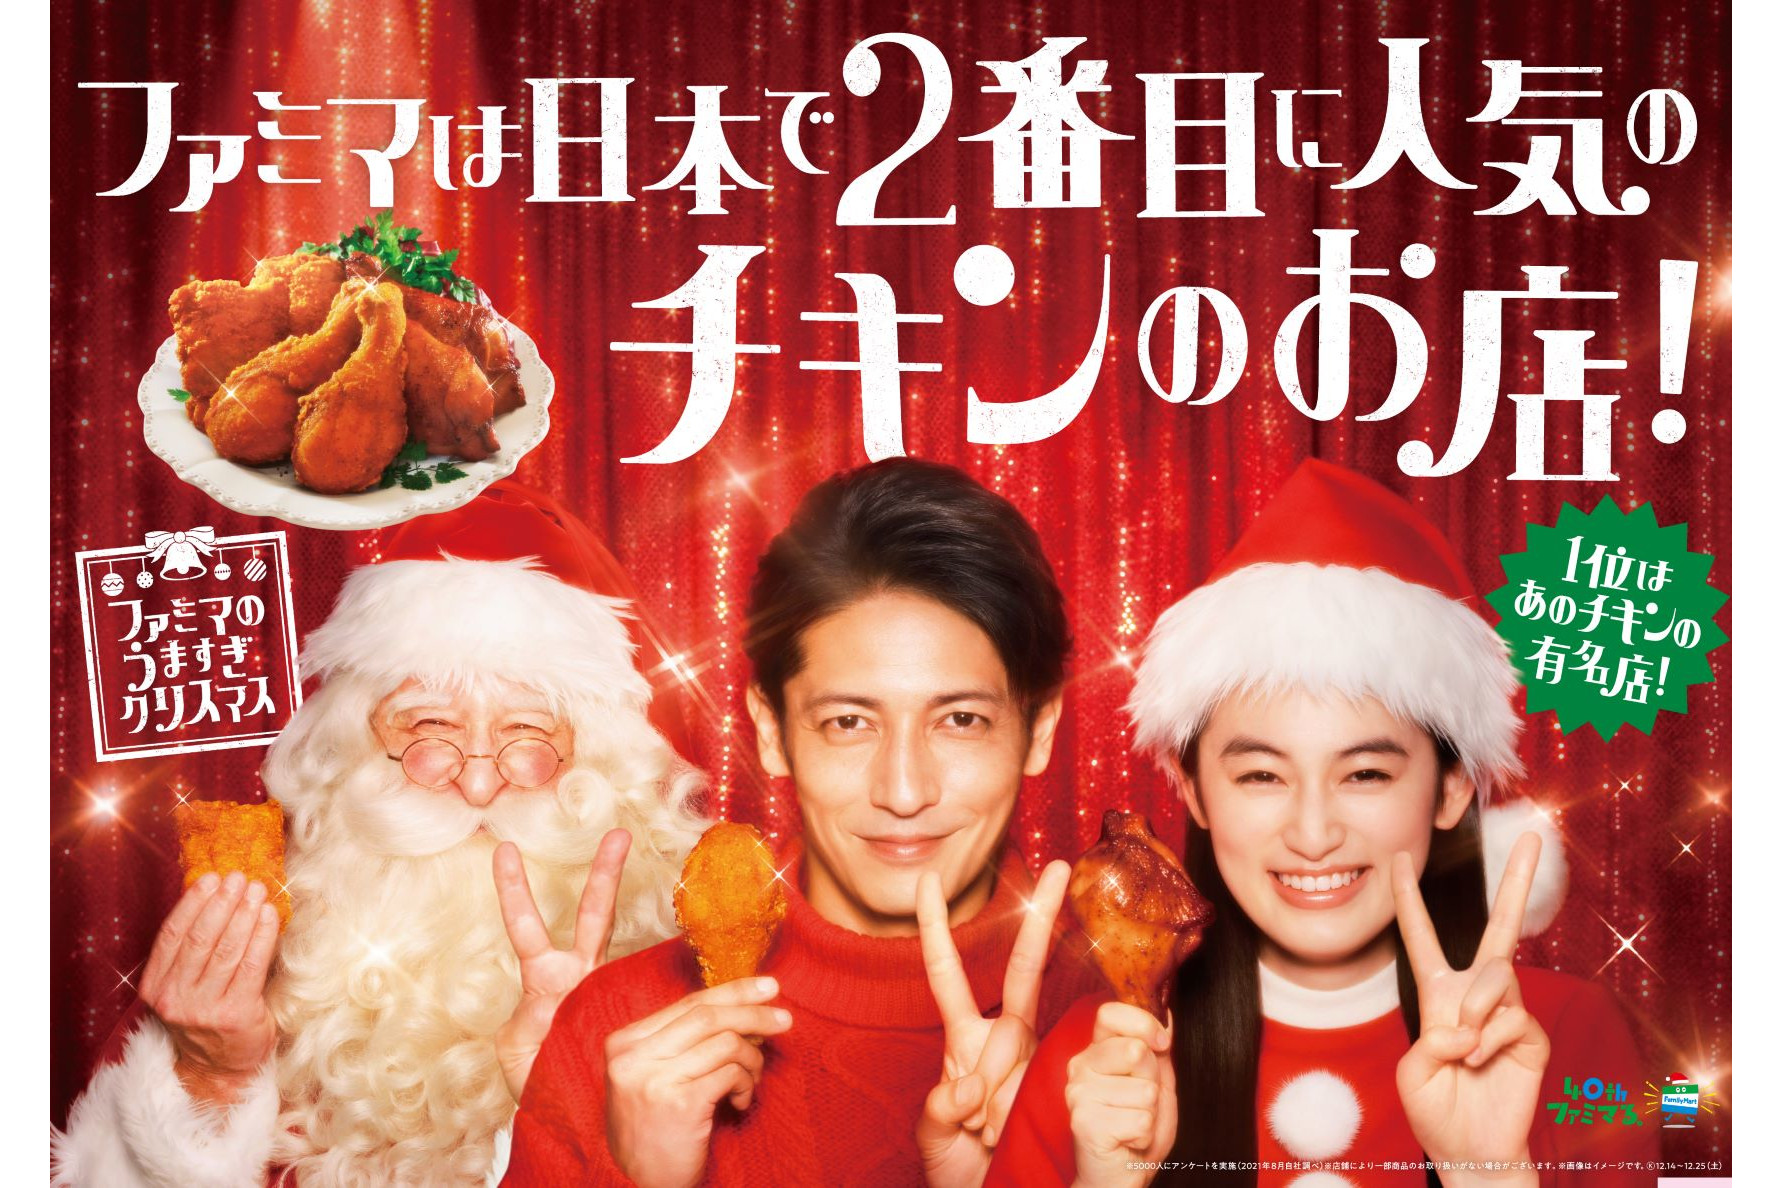 日本で2番目に人気のチキンのお店 のファミマ ファミマプレミアムチキン 骨付き 発売 12月19日 25日は値引き販売 グルメ Watch